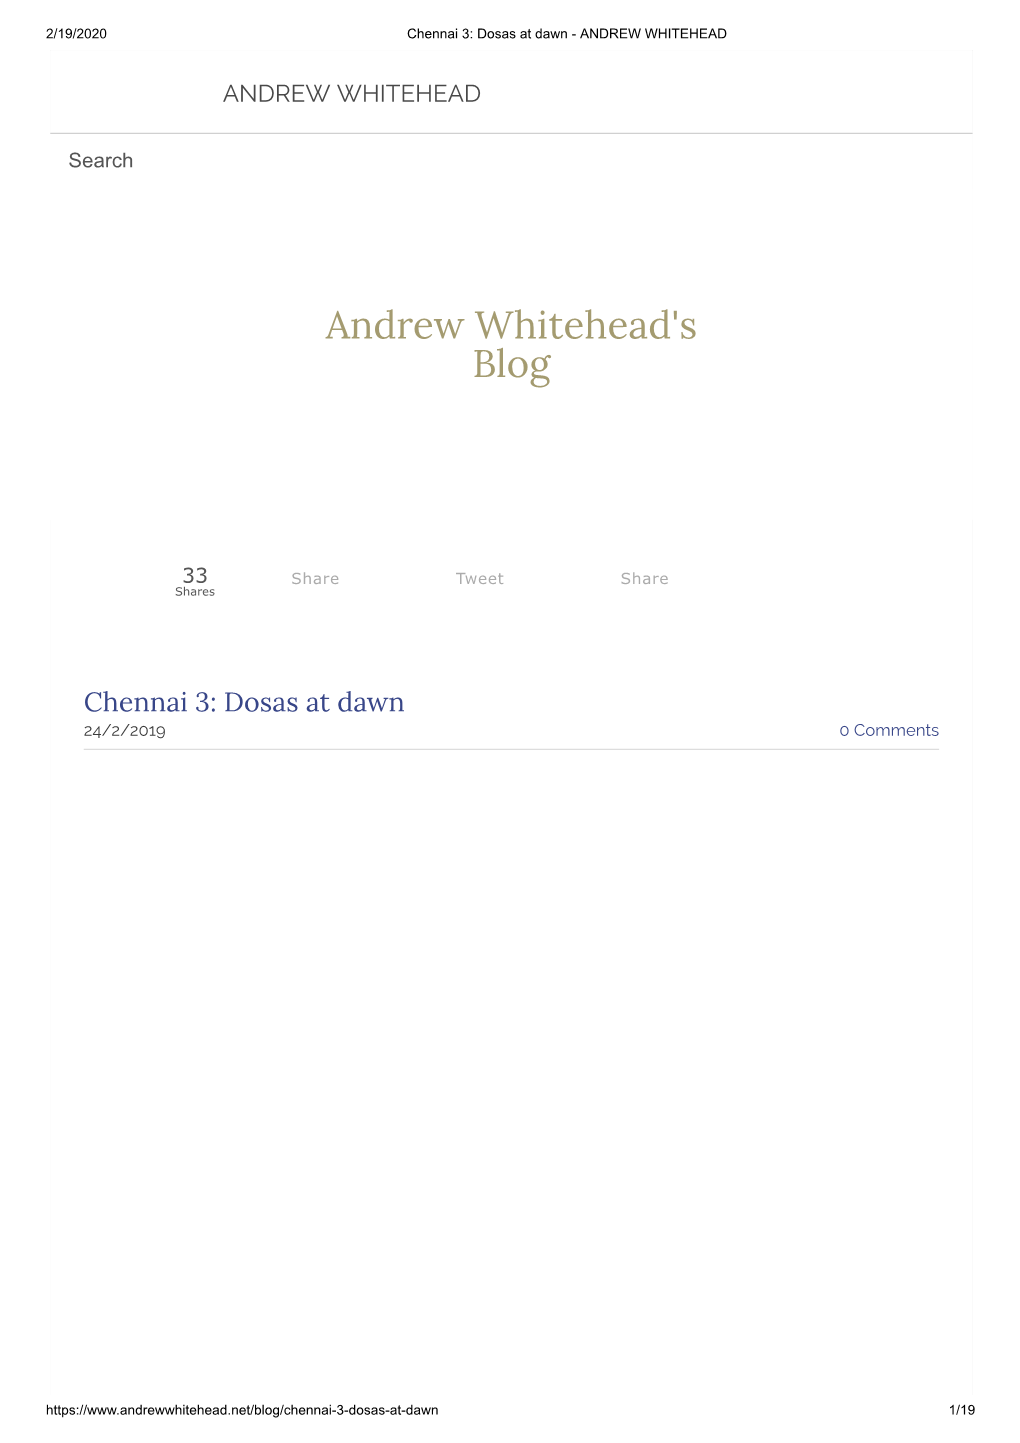 Andrew Whitehead's Blog